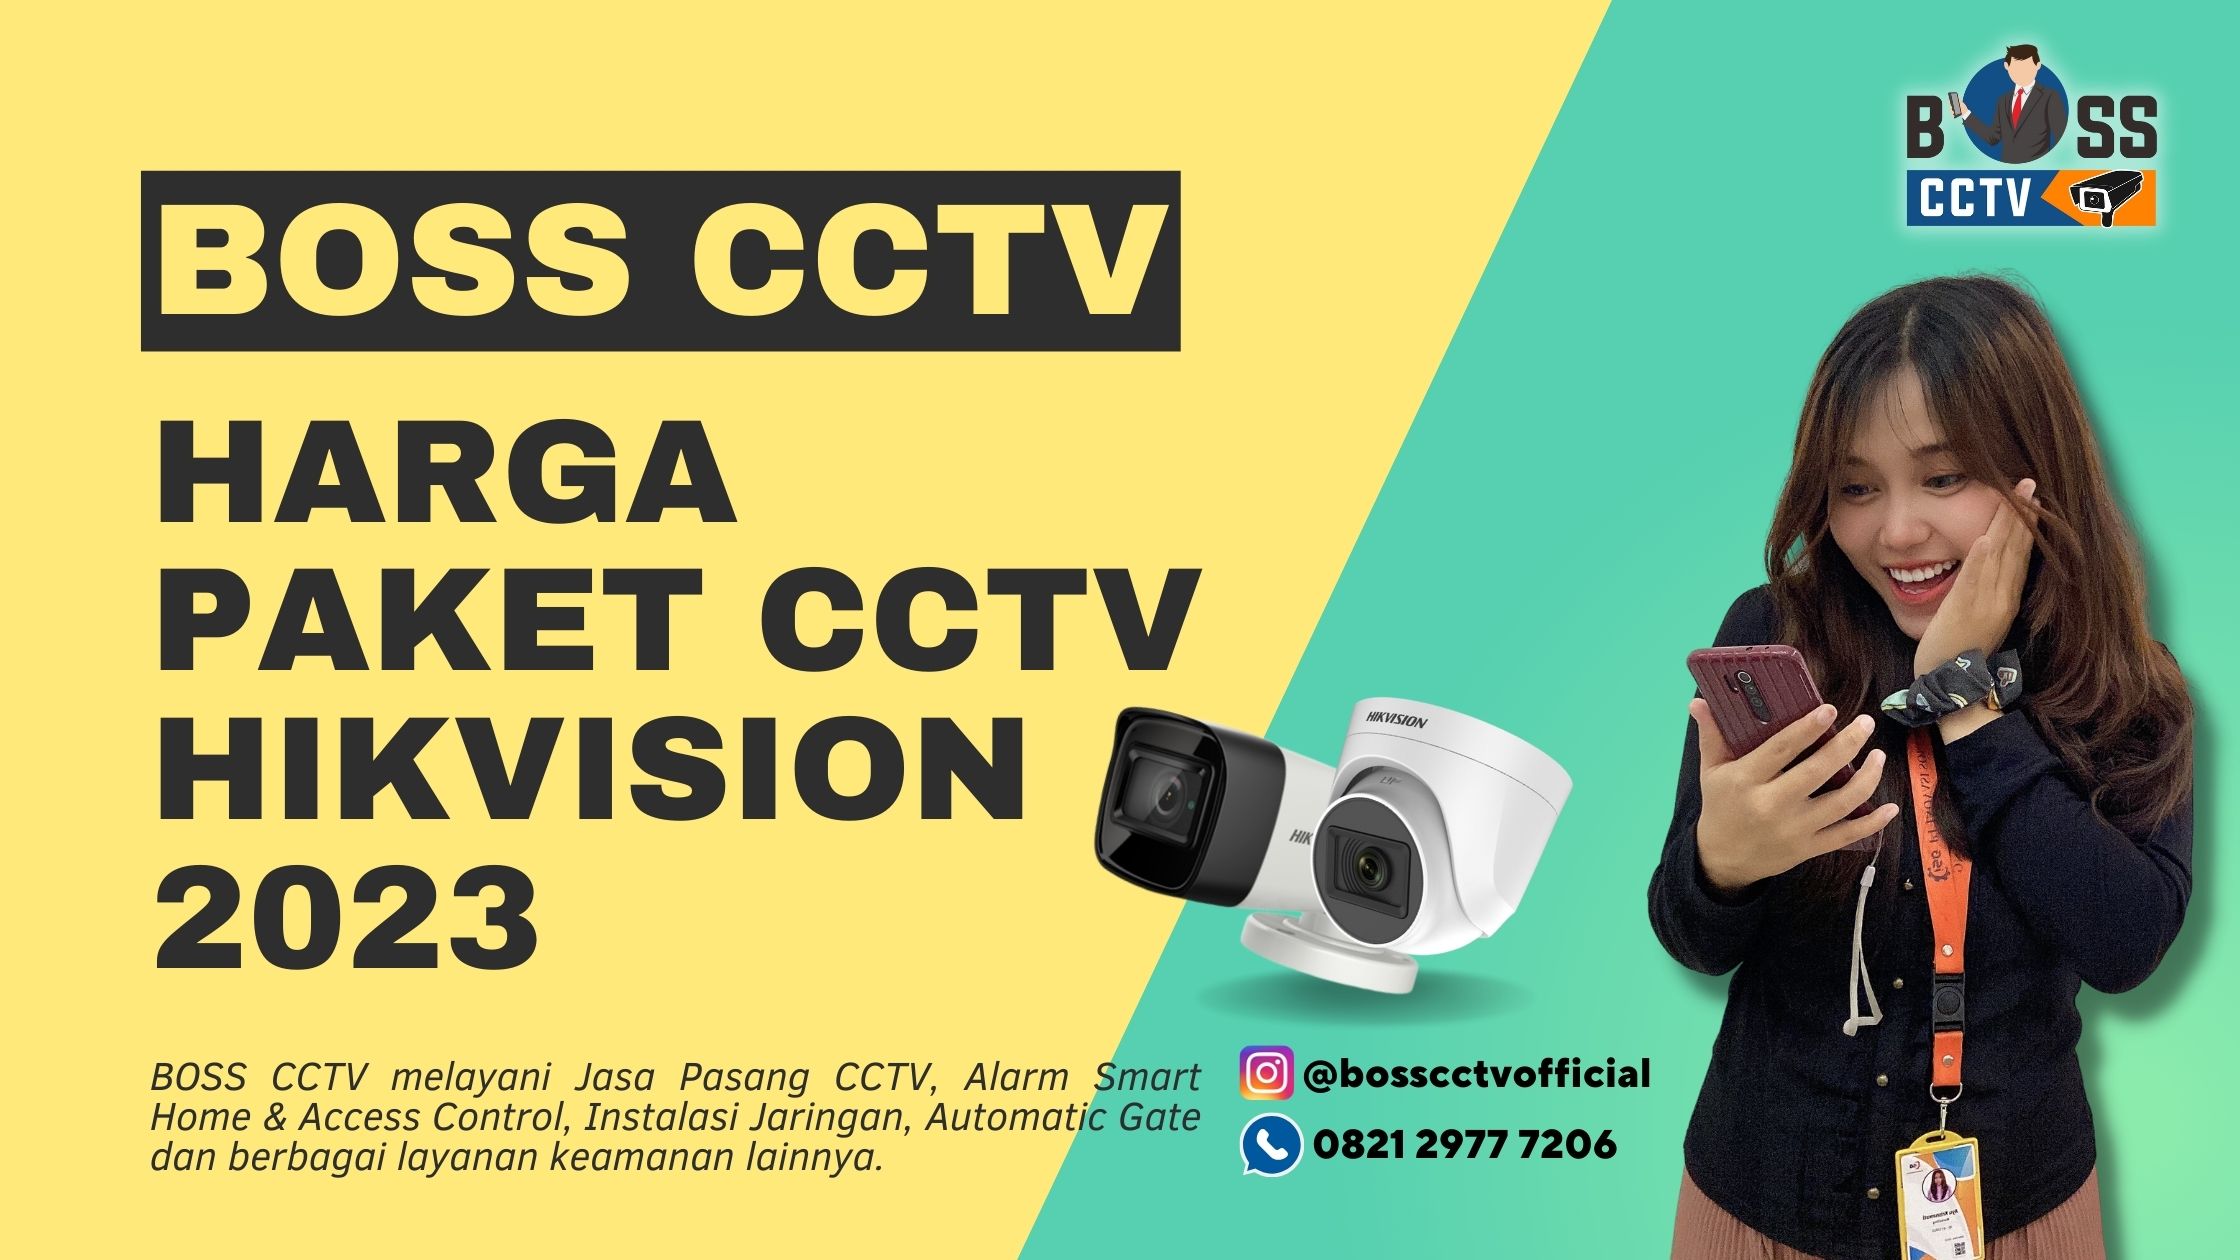 Harga Paket CCTV Hikvision 2023